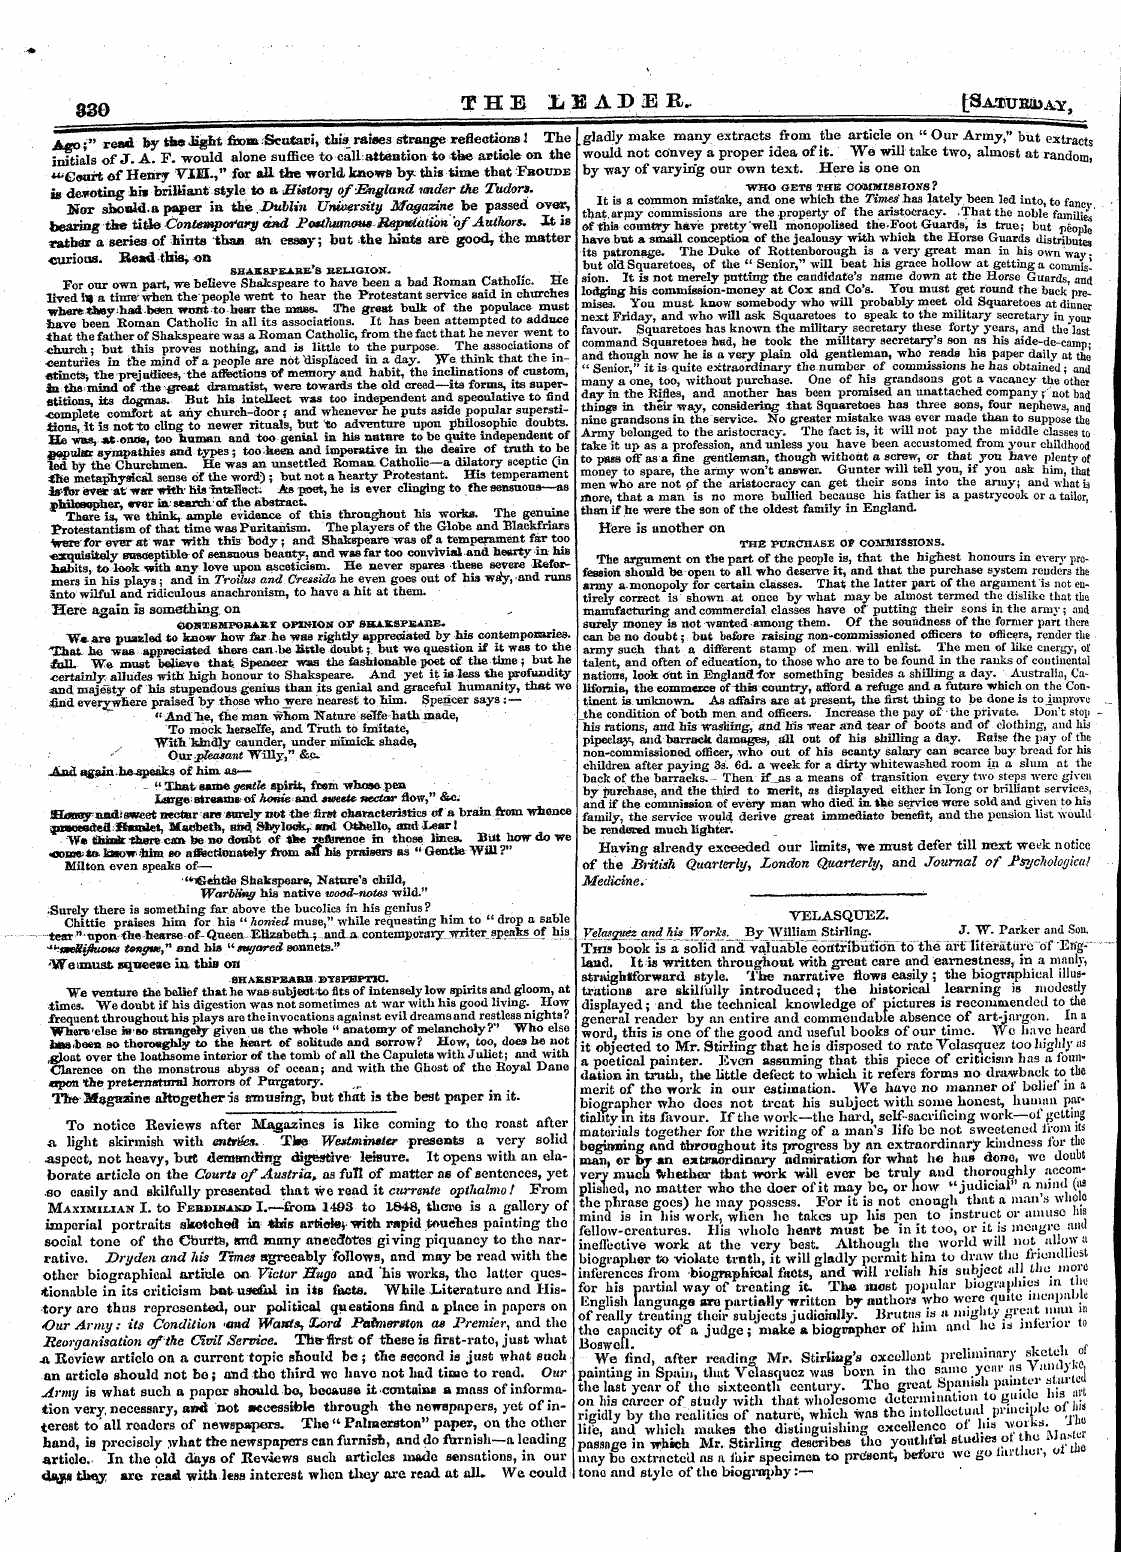 Leader (1850-1860): jS F Y, 2nd edition - V Ggq The ' Lum A D 3b R- Fcsabukax&Y,